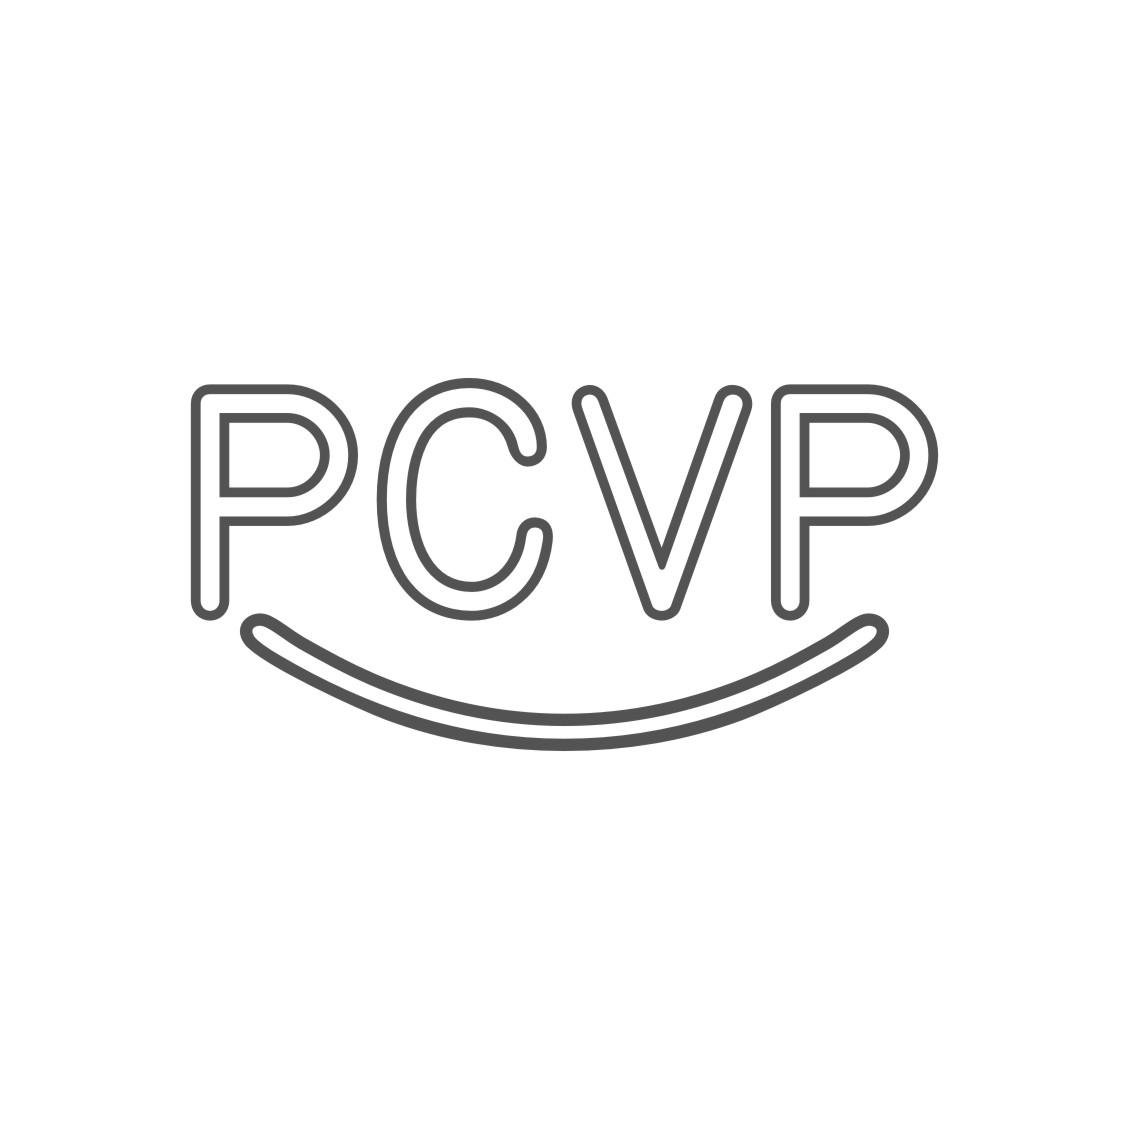 PCVP